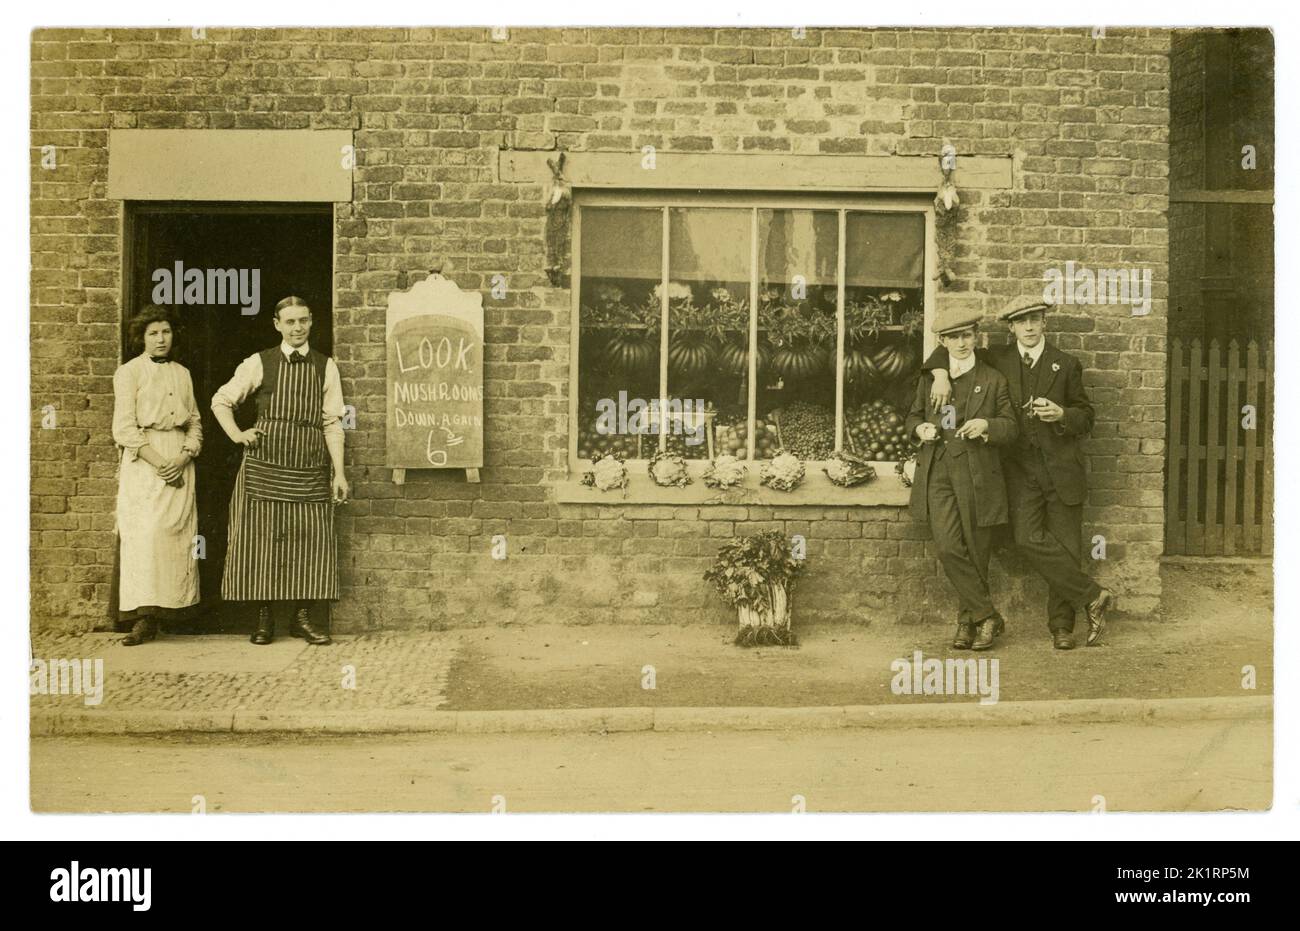 Original très clair début des années 1900 carte postale de l'ère édouardienne de petite épicerie, magasin général, indépendant, vendant des légumes - chou-fleurs, céleri, fruits - bananes - affiché dans la vitrine. Panneau d'affichage annonçant les champignons à prix réduit. Un lapin pend de chaque côté de la fenêtre. Le mari et la femme, le couple, les propriétaires (l'homme portant un tablier rayé) se tiennent à l'extérieur de leur magasin avec 2 gars à la mode en costumes et portant des casquettes plates, des clients, des personnages espiègles, des amis, des amitiés, gay peut-être. Circa 1912. Village au Royaume-Uni Banque D'Images